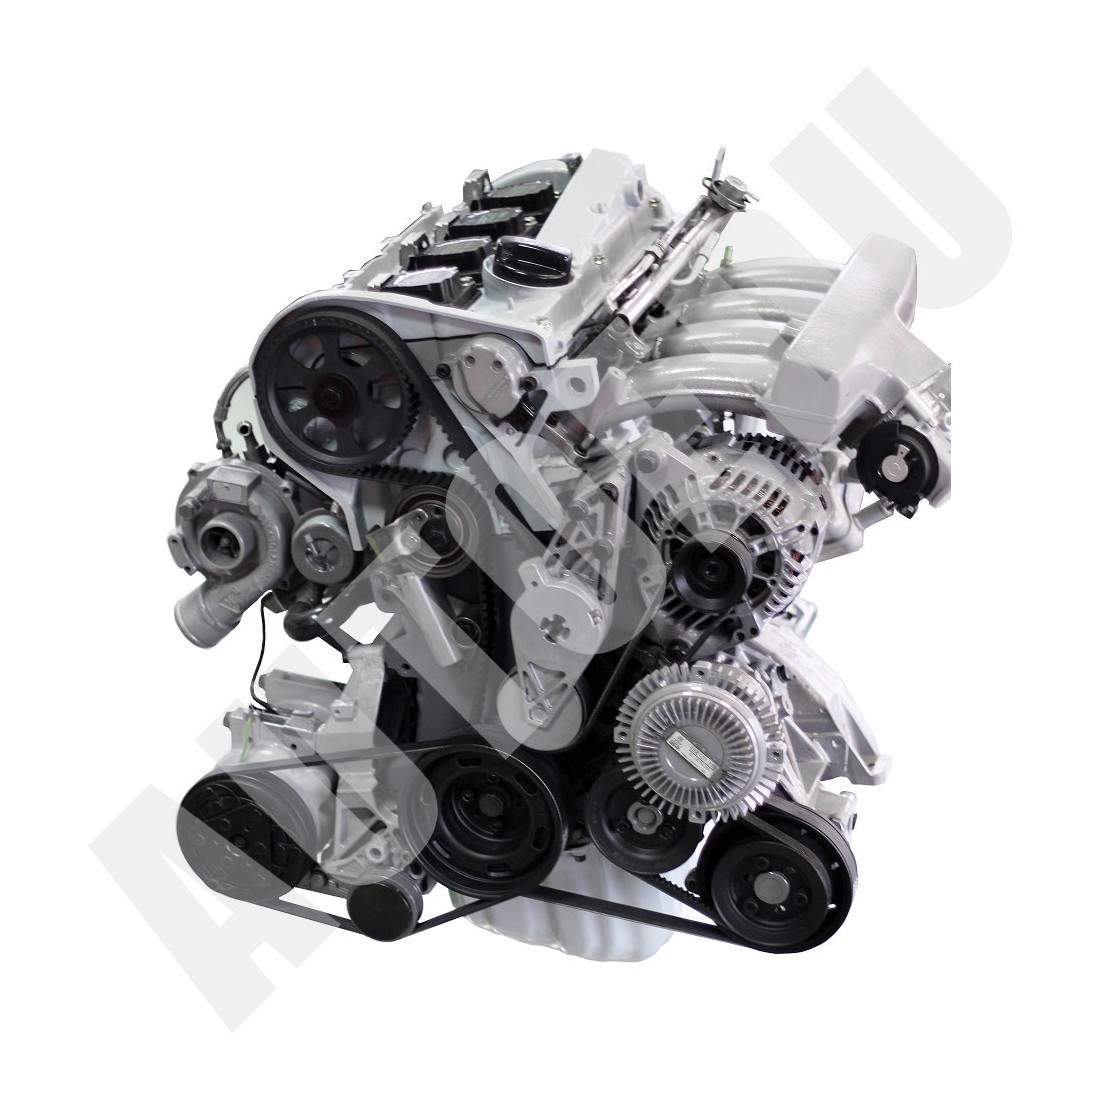 Benzininis MPI Turbo variklis, skirtas išmontavimui ir surinkimui VIVV1-ADRT AutoEDU